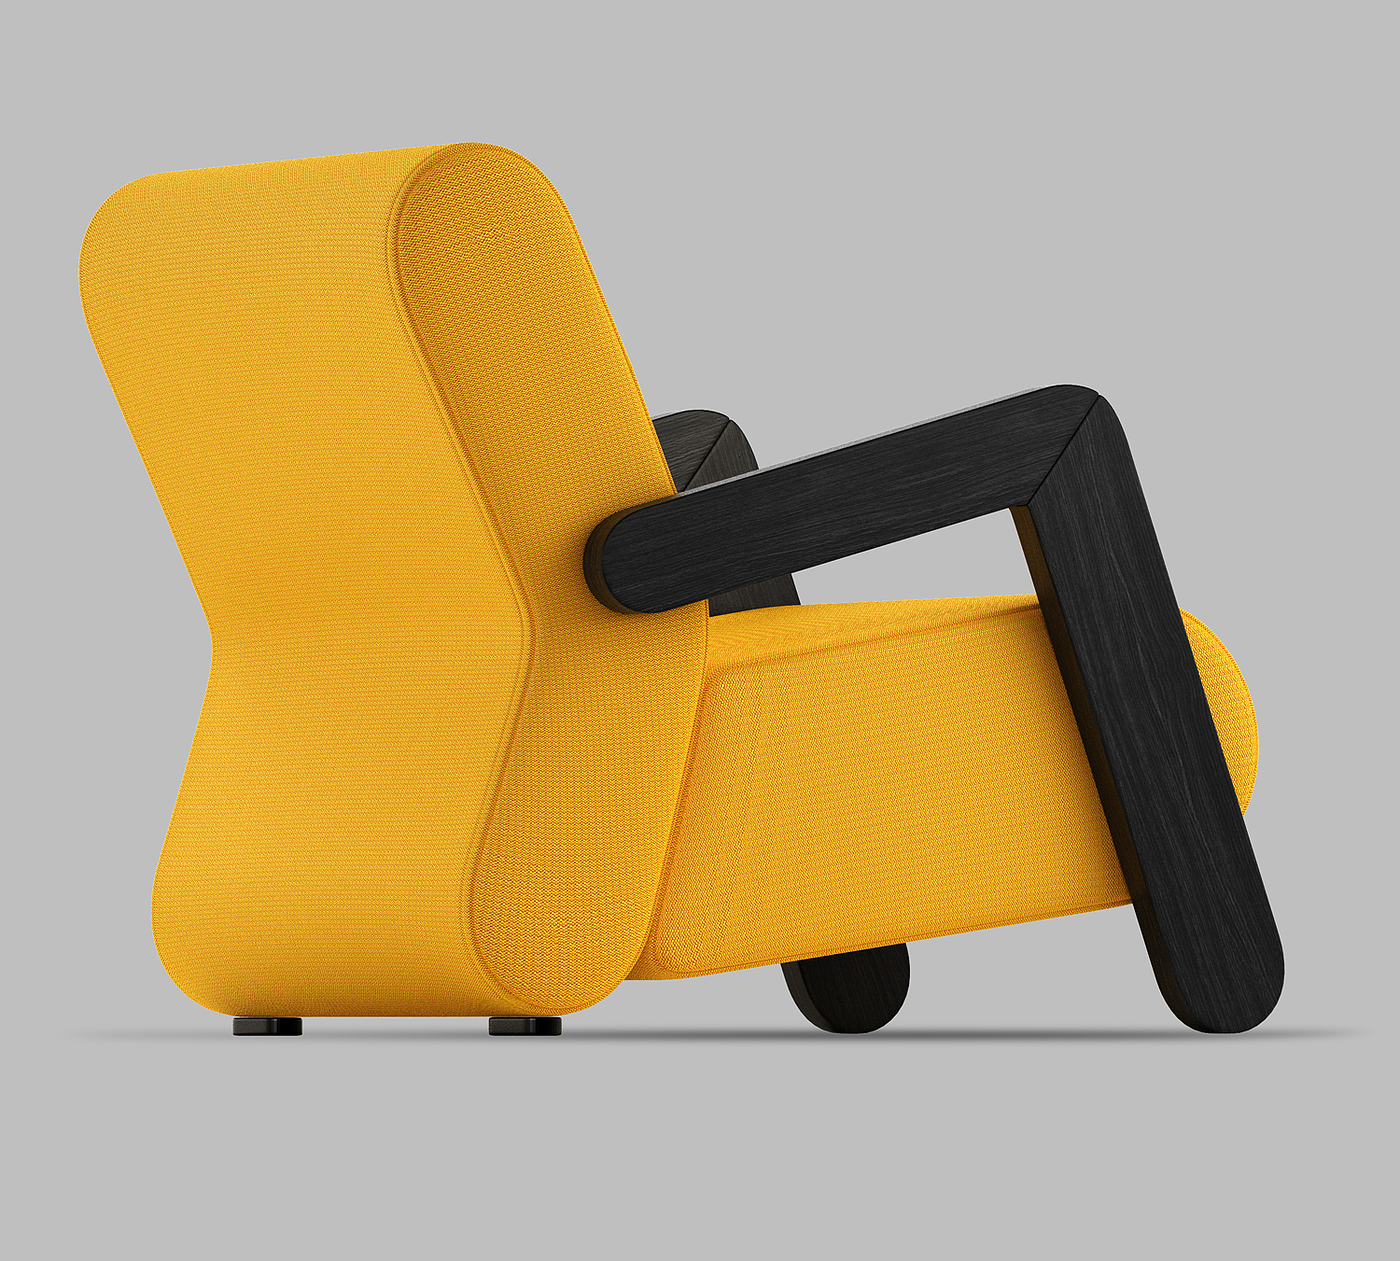 座椅设计，家具设计，工业设计，极简设计，